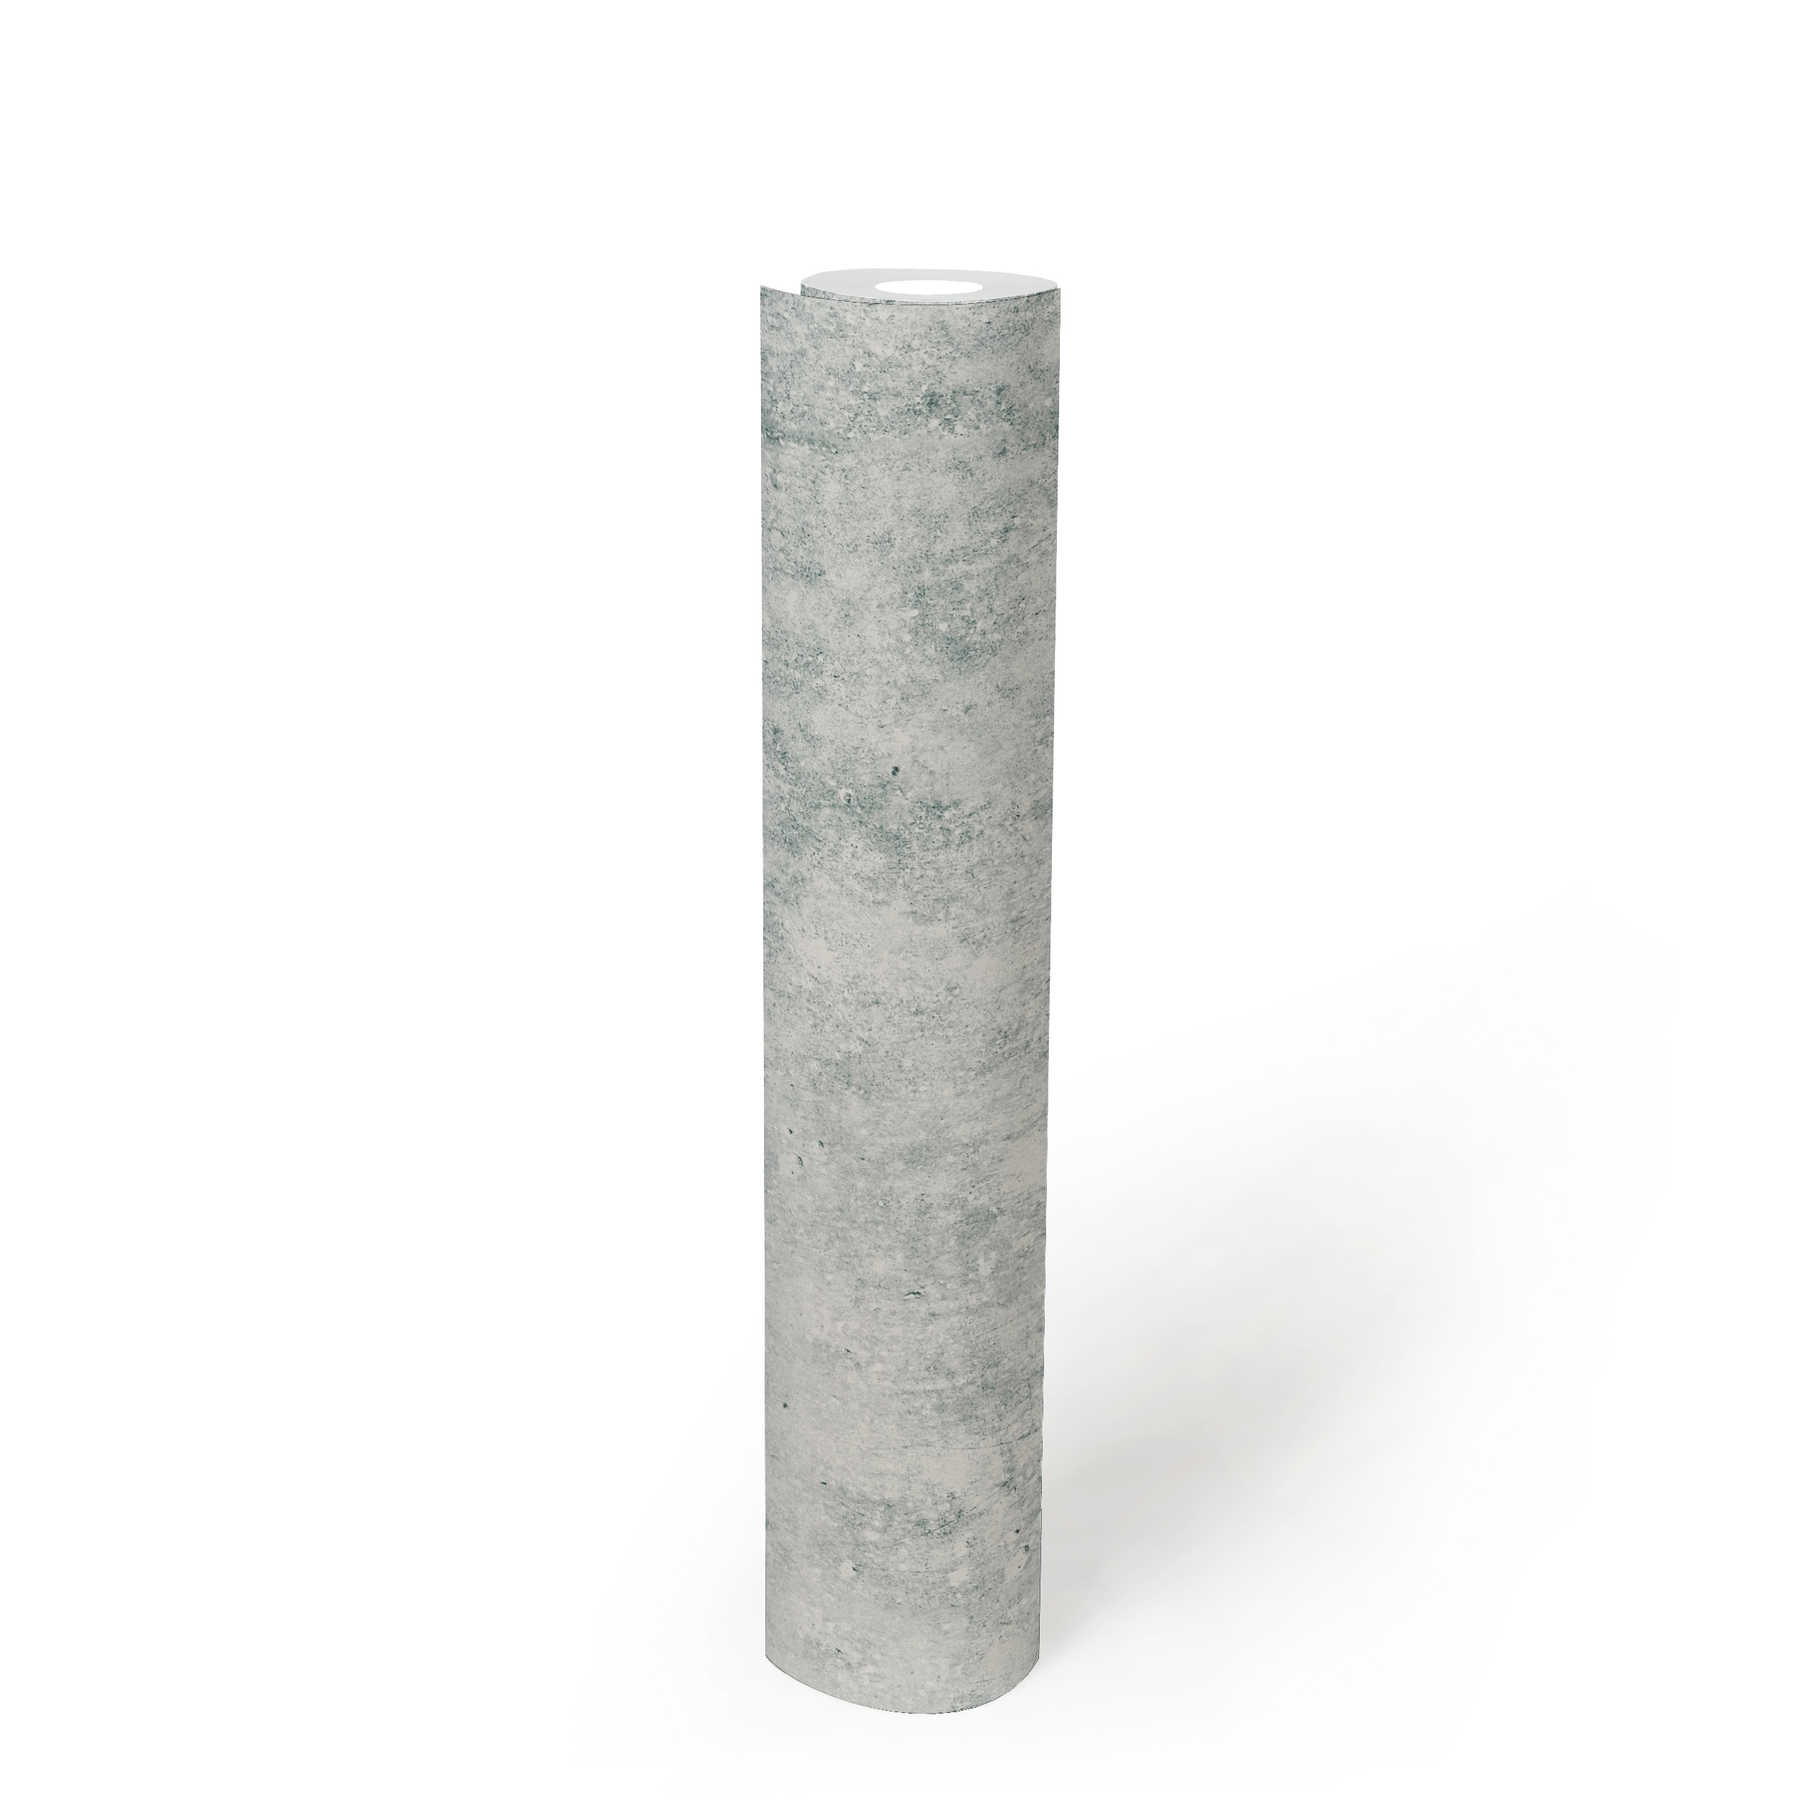             Papel pintado de hormigón ligero con aspecto de superficie rugosa - gris
        